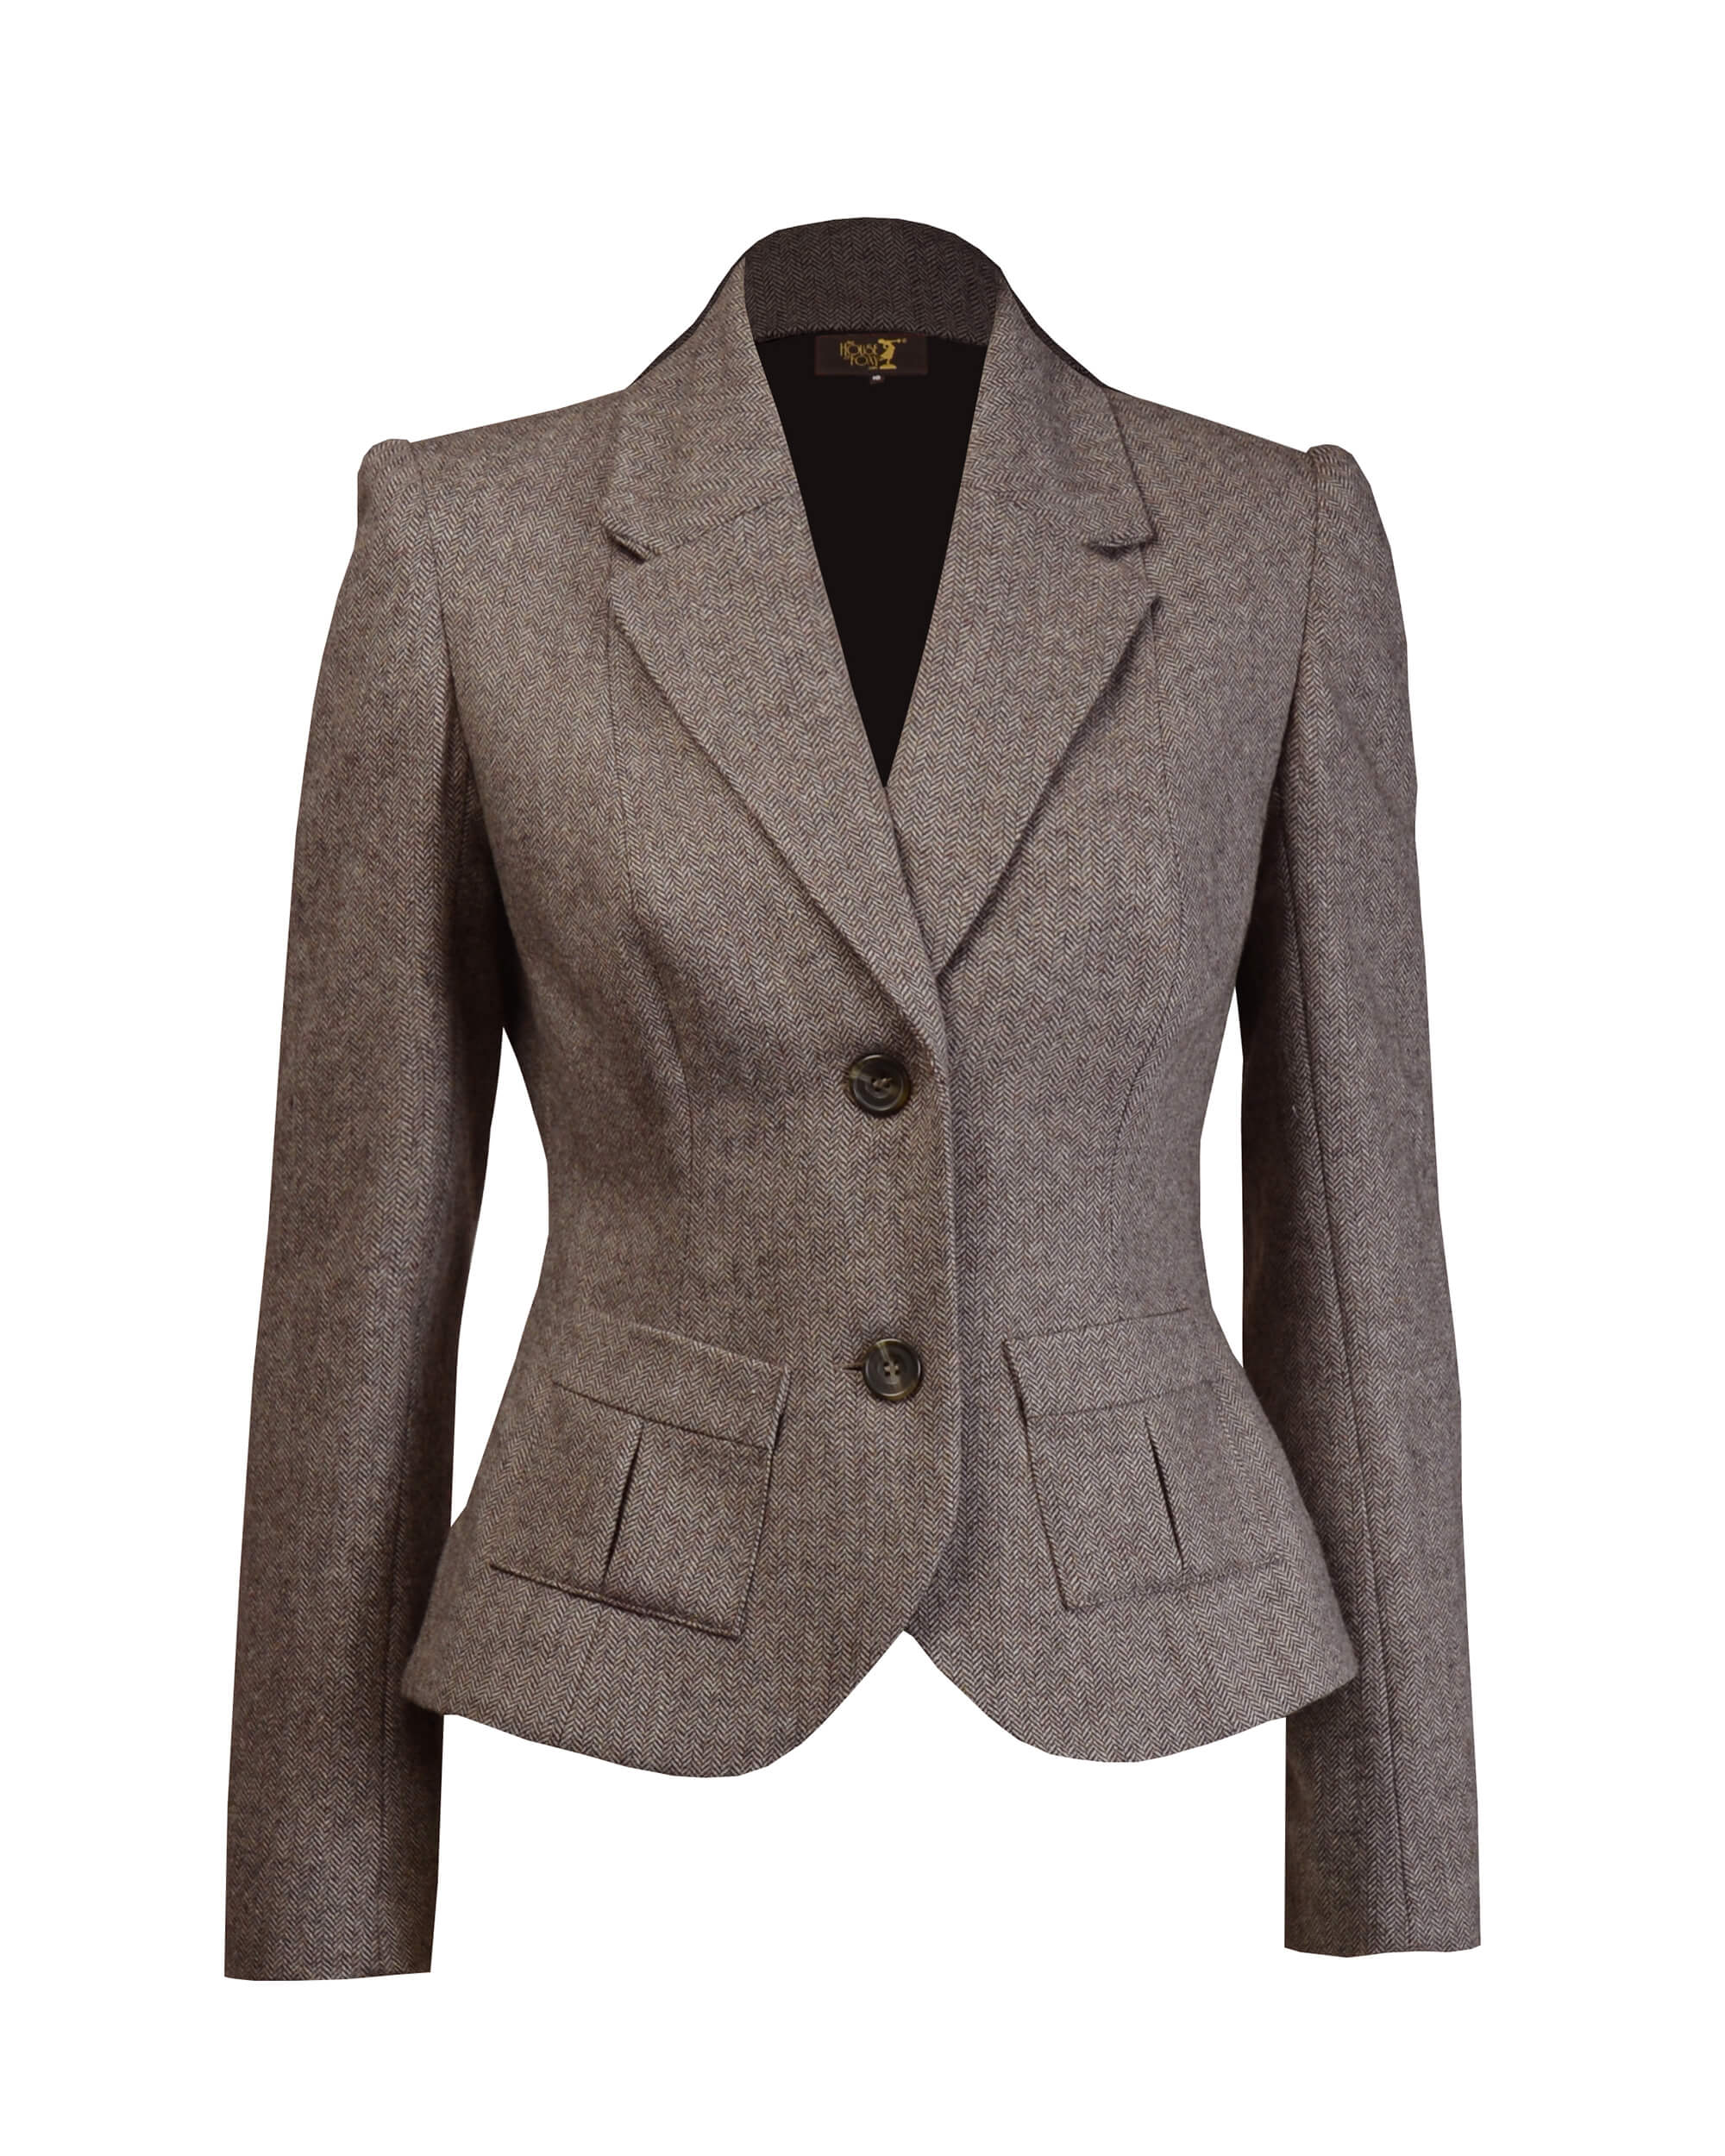 30s Tailored Jacket - Brown Herringbone